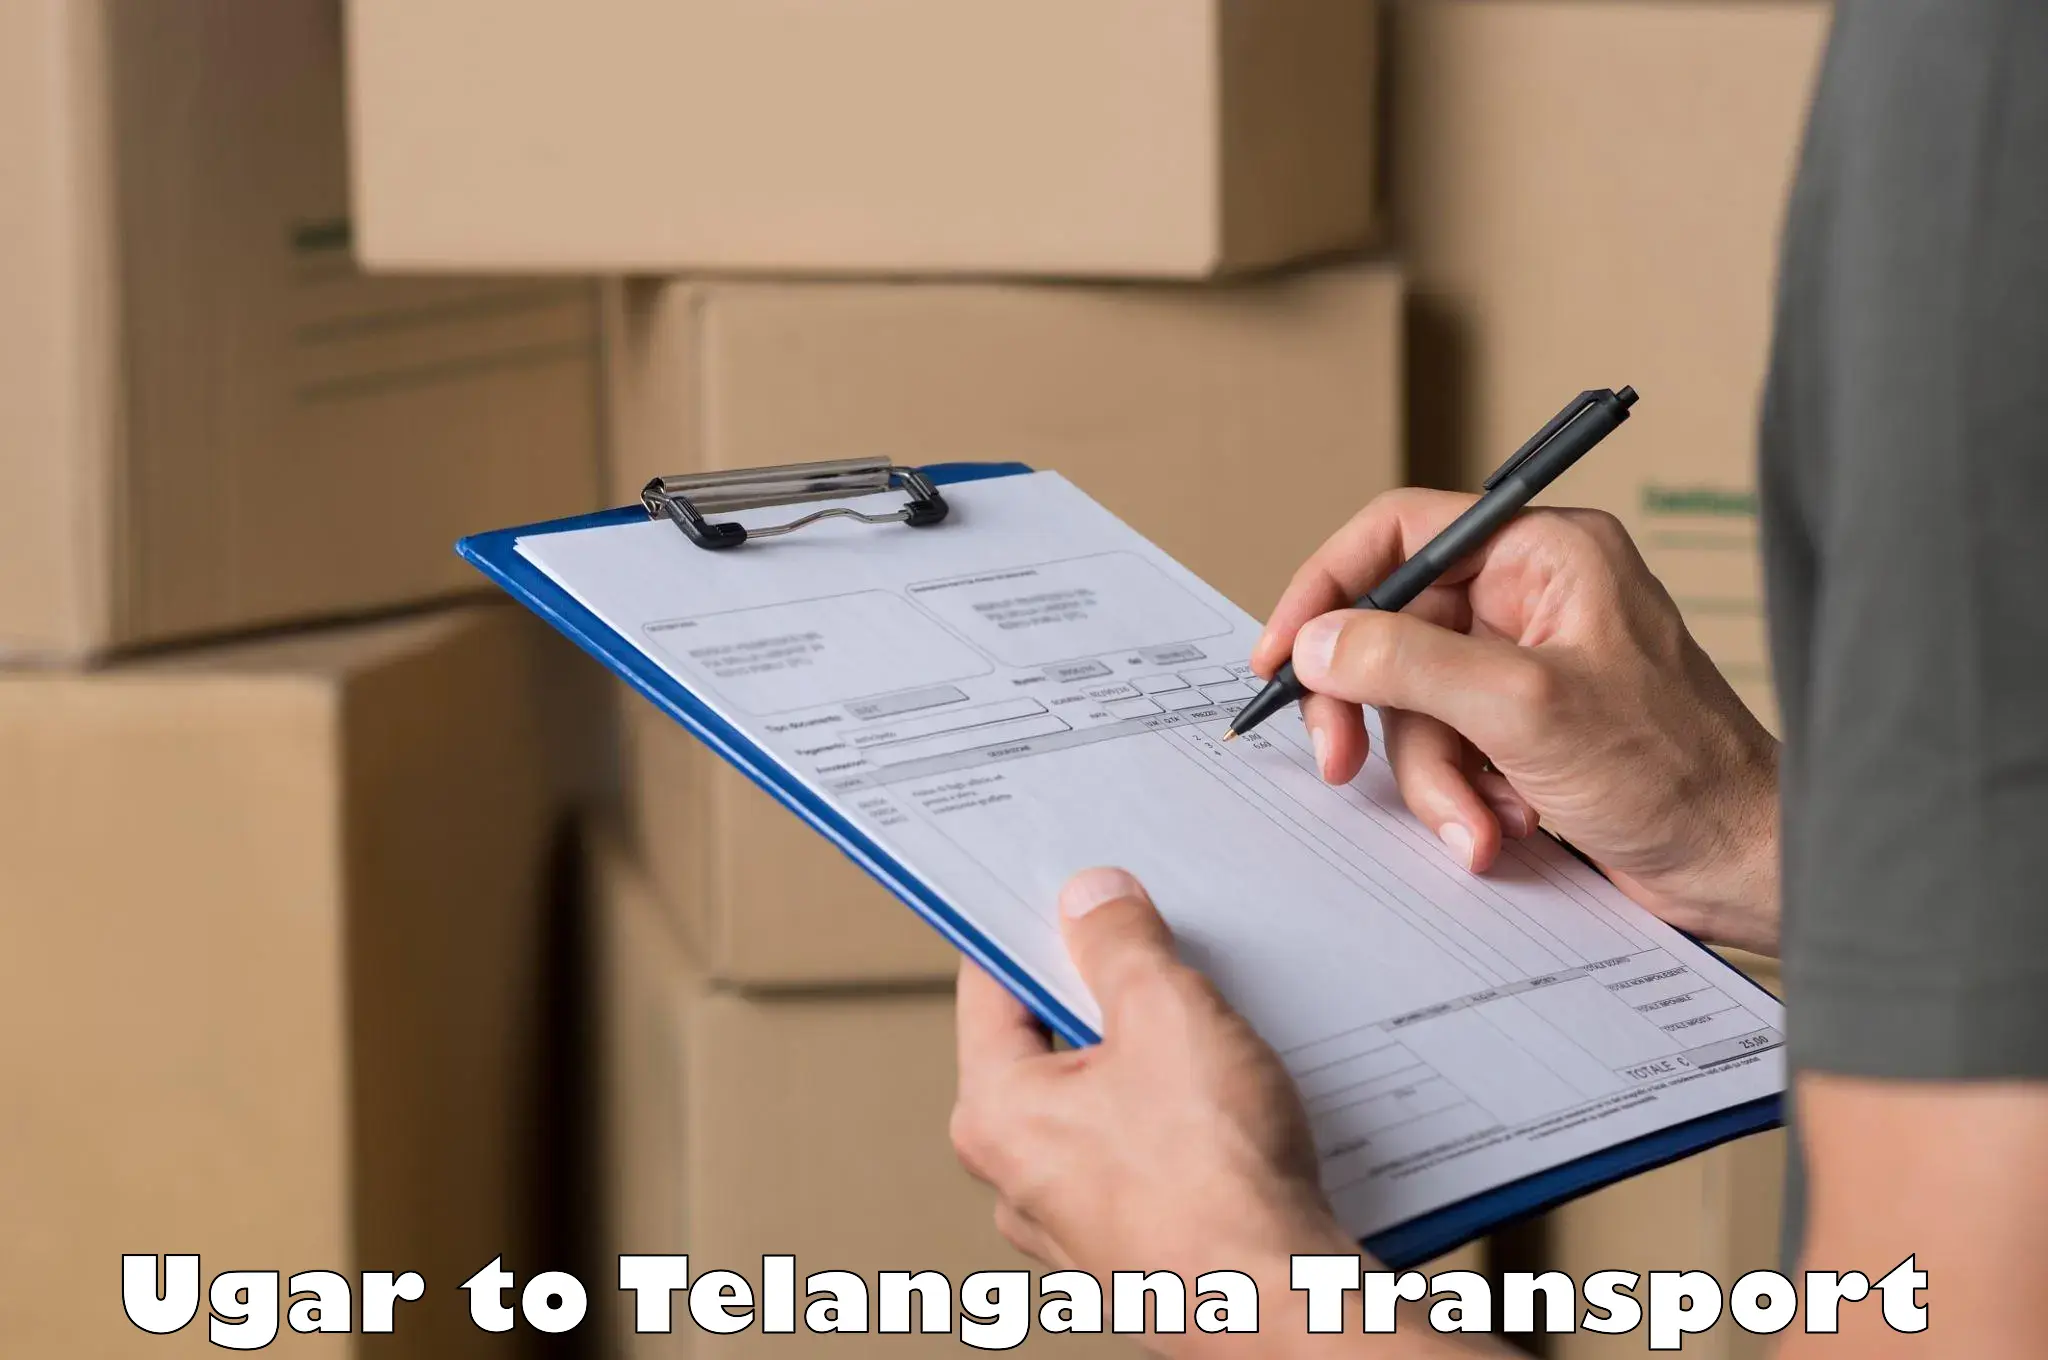 Logistics transportation services in Ugar to Karimnagar